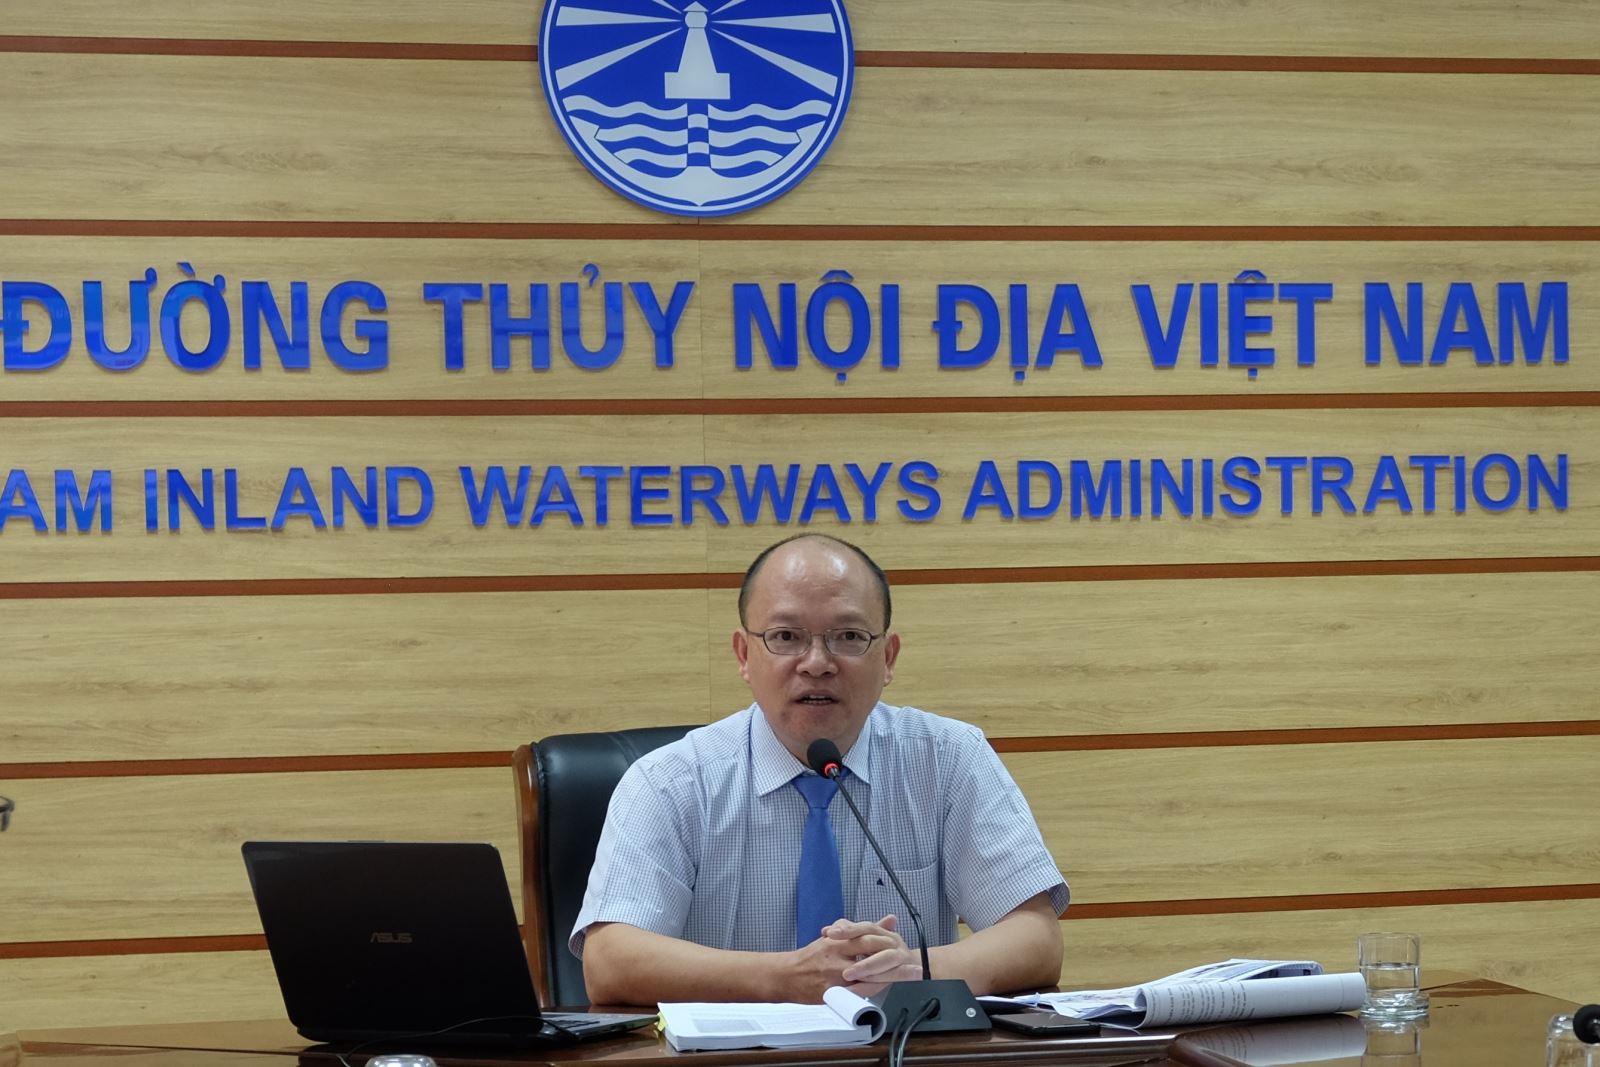 Ông Bùi Thiên Thu, Cục trưởng Cục Đường thủy nội địa Việt Nam